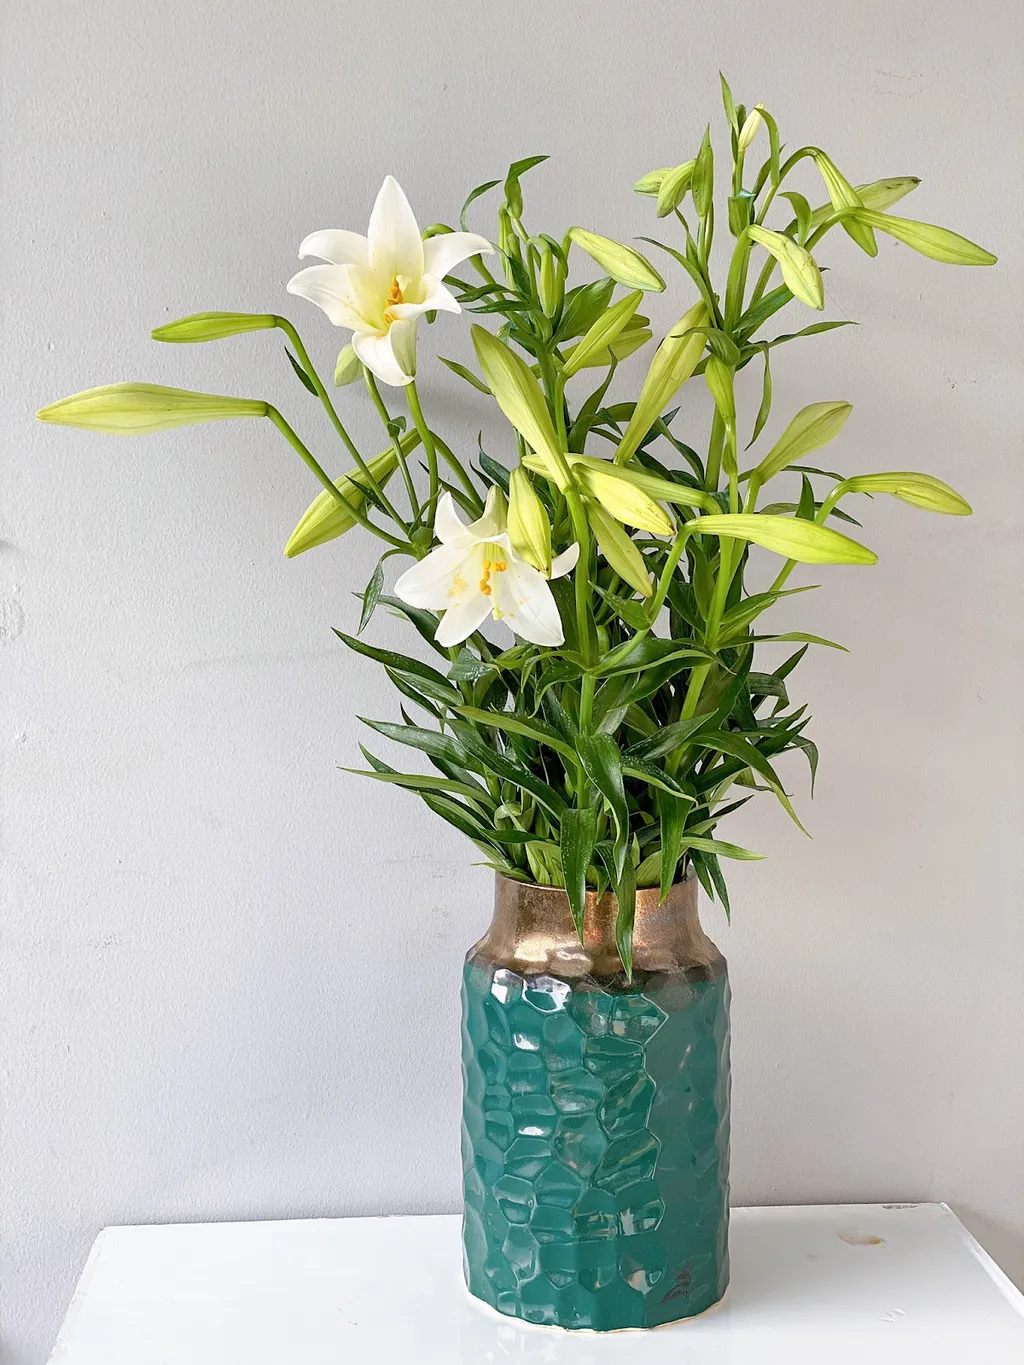 Bằng cách sắp xếp hoa loa kèn trong một bình hoa đẹp mắt, bạn có thể tạo ra một trang trí đơn giản nhưng tinh tế.